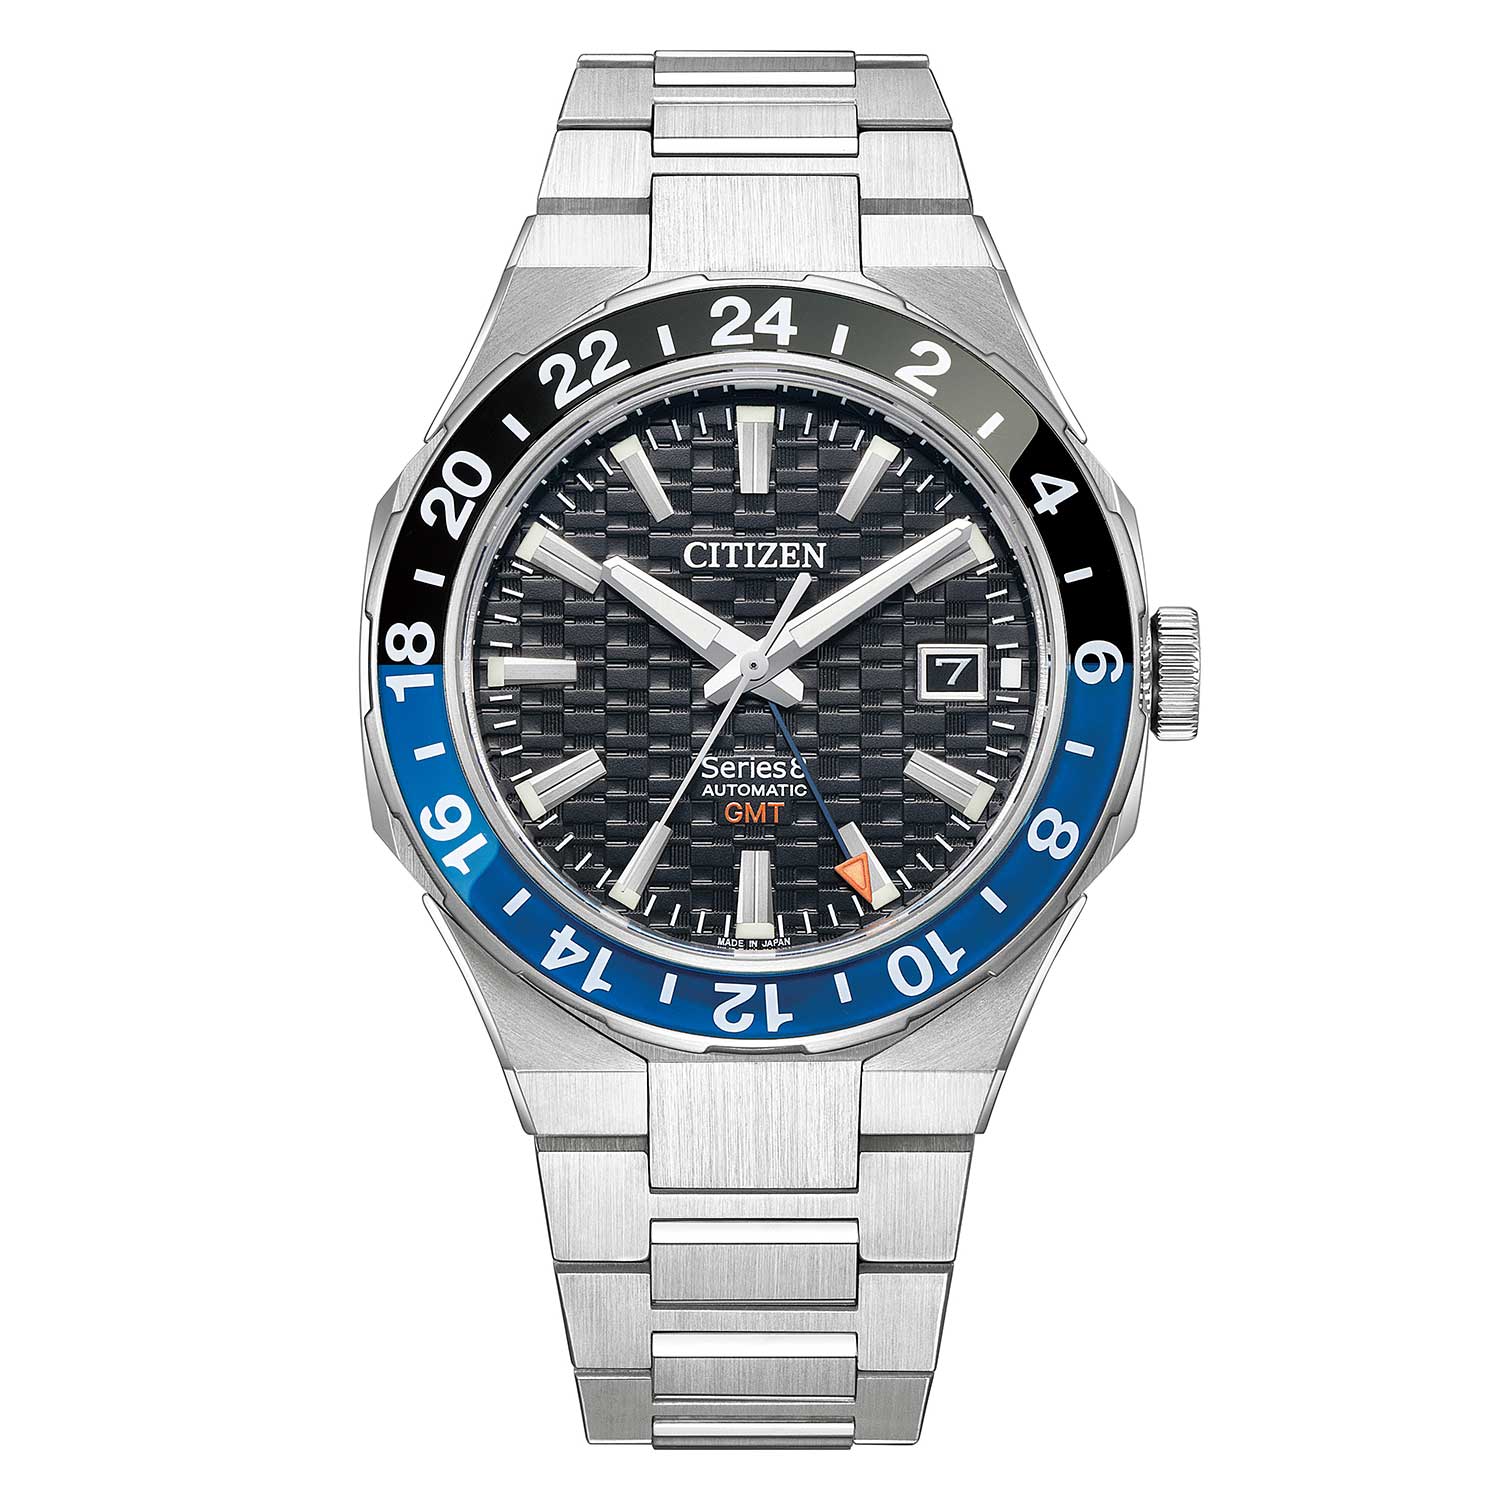 Đồng hồ Citizen Series 8880 Mechanical GMT 